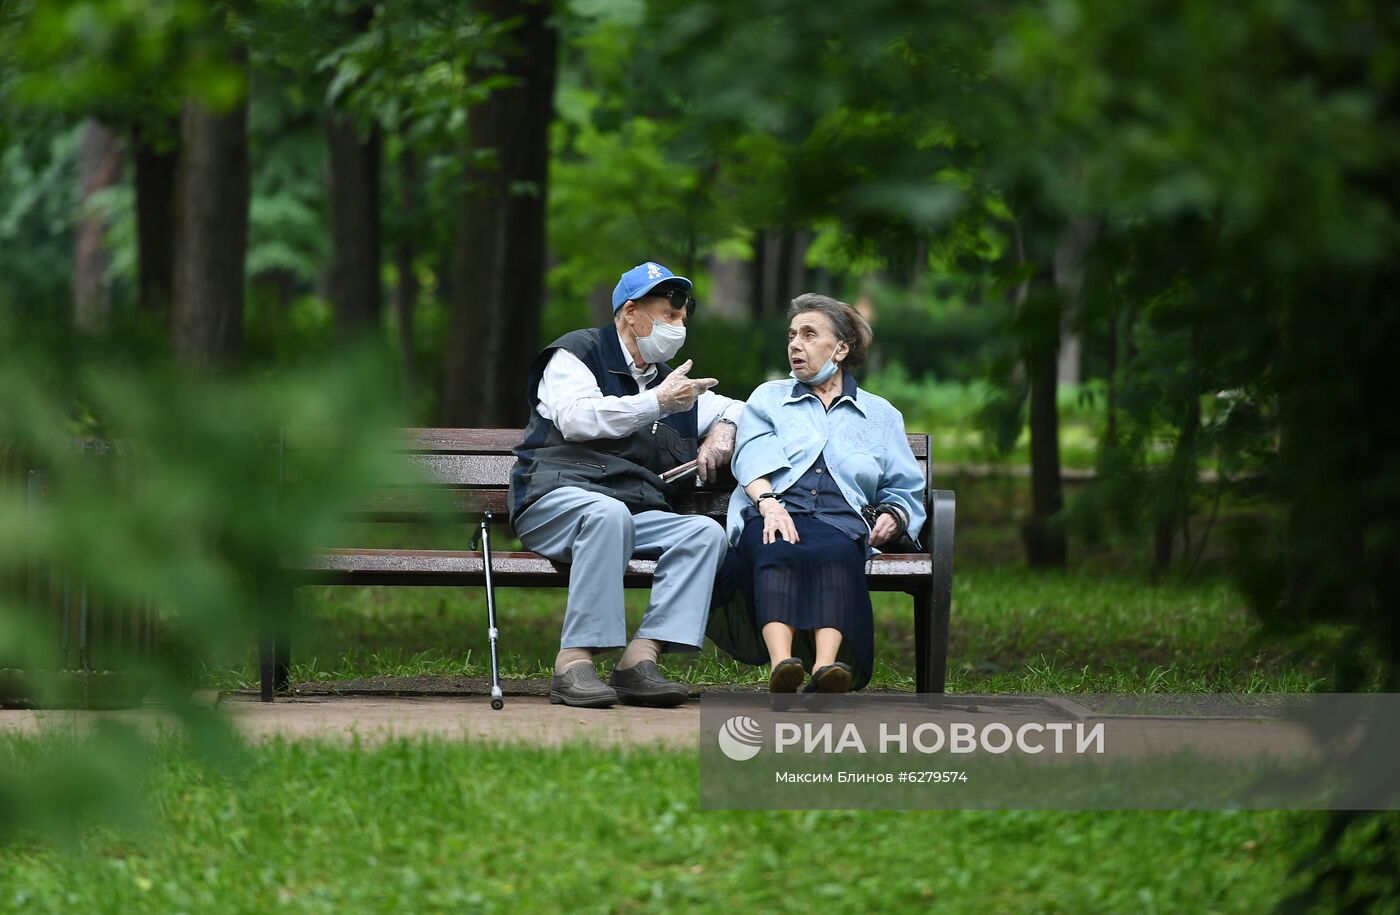 Парк "Сокольники" в Москве